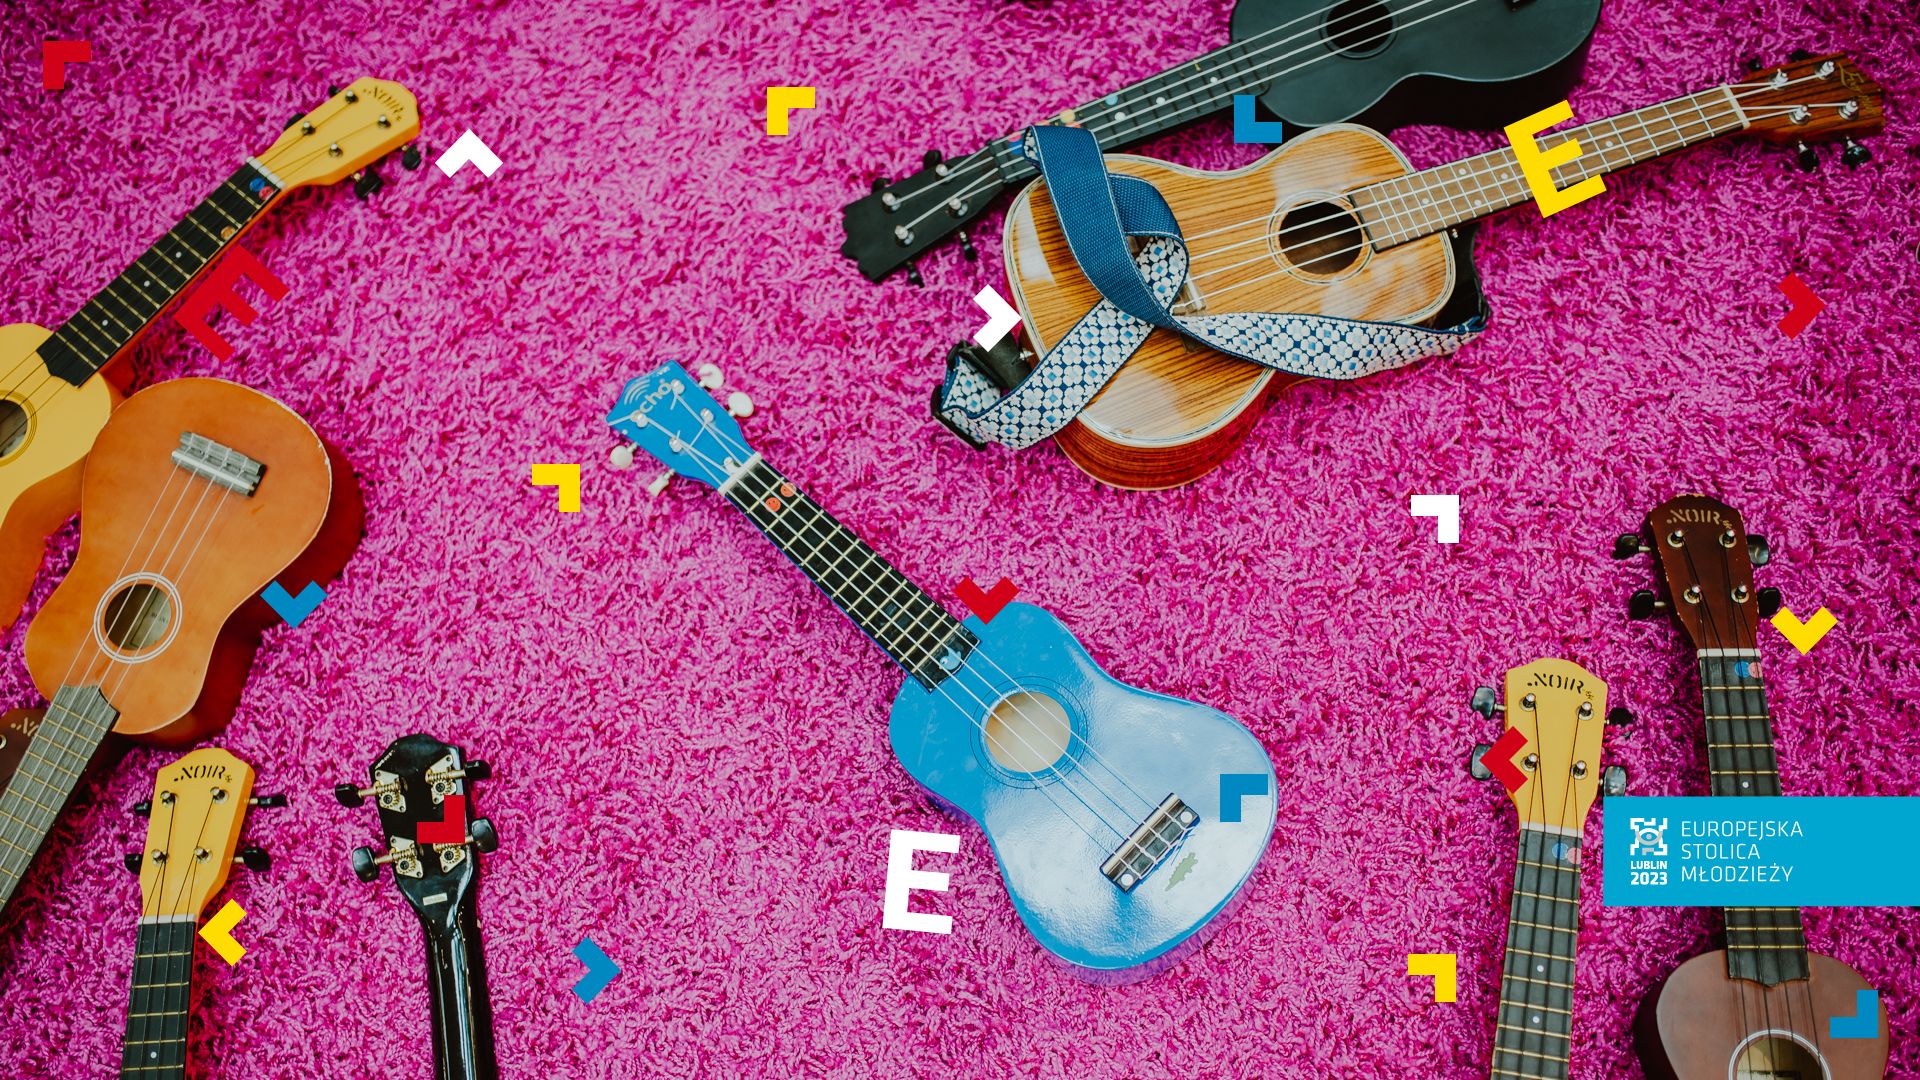 Na różowym dywanie leży dużo ukulele.